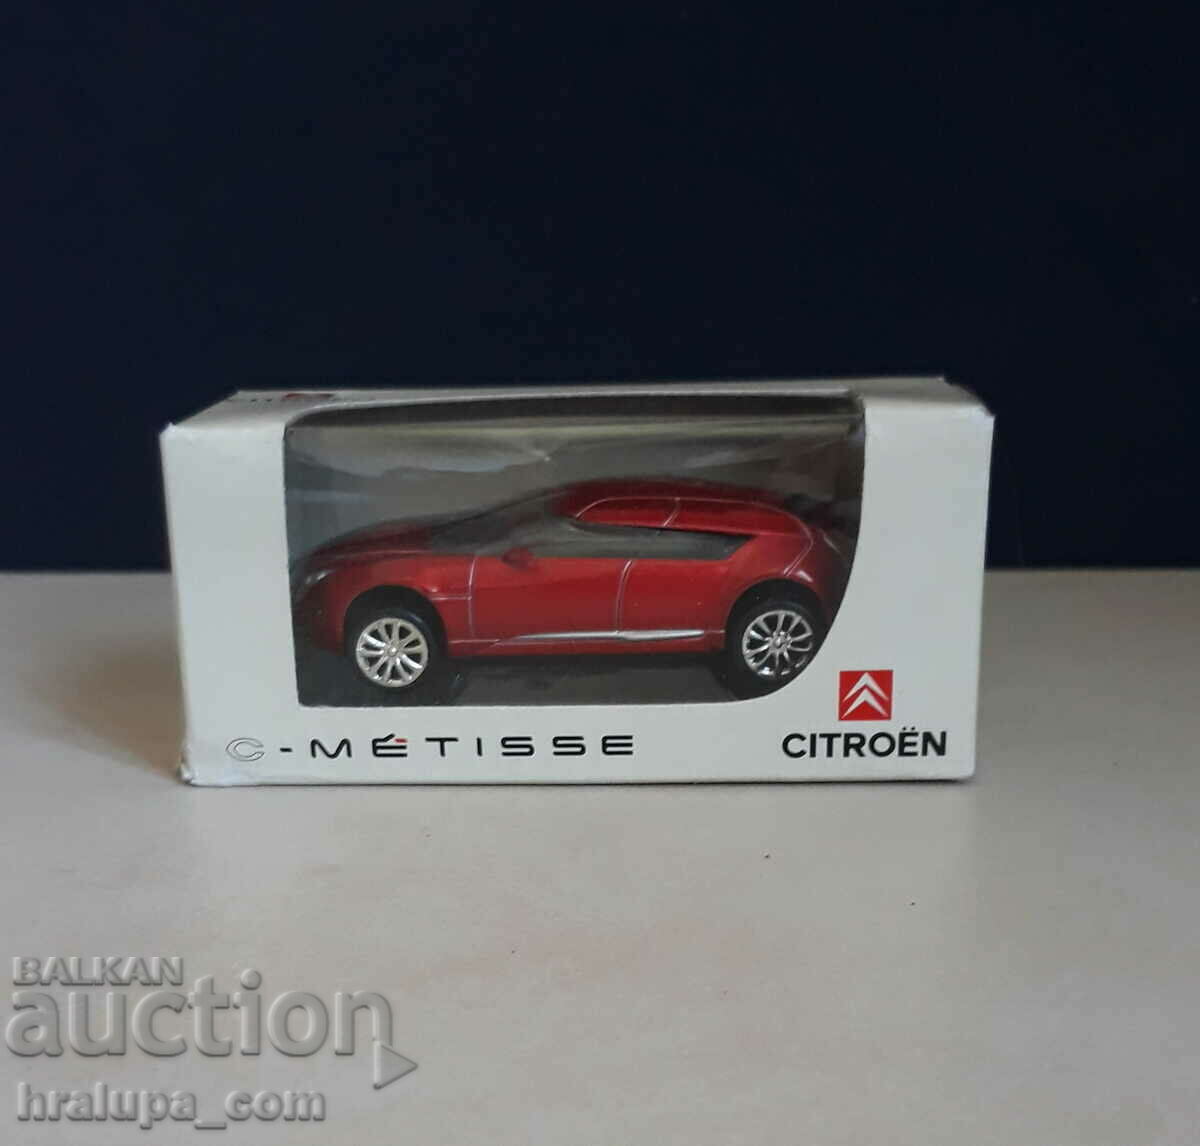 Μεταλλικό καρότσι Norev Citroen C - Metisse νέο με κουτί